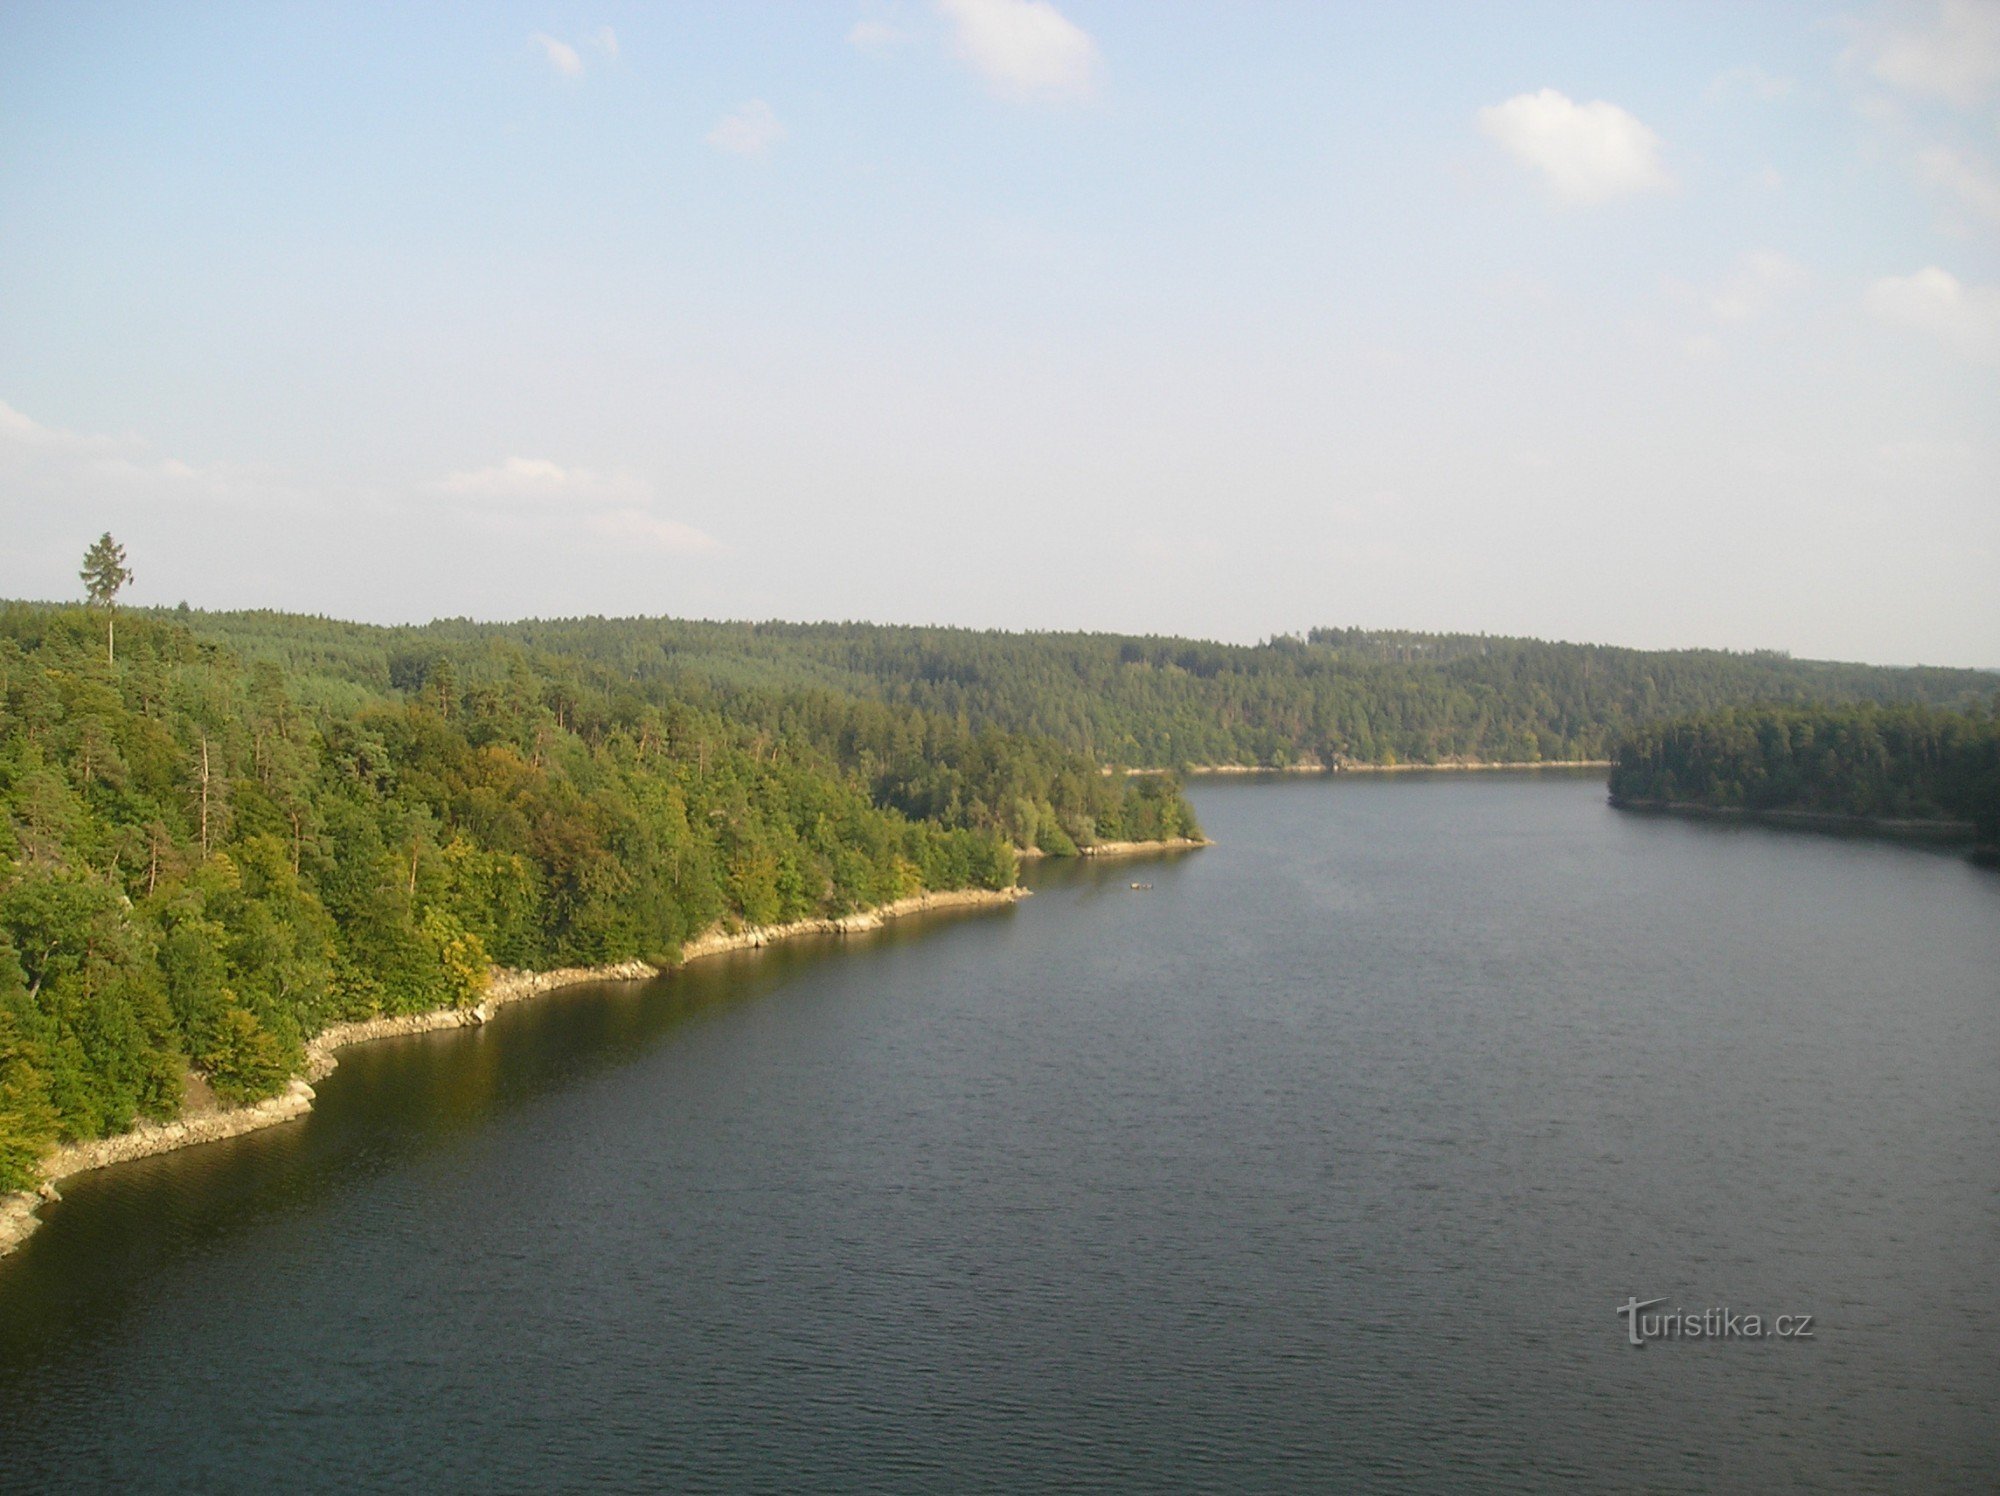 Pogled na akumulacijsko jezero Dalešická